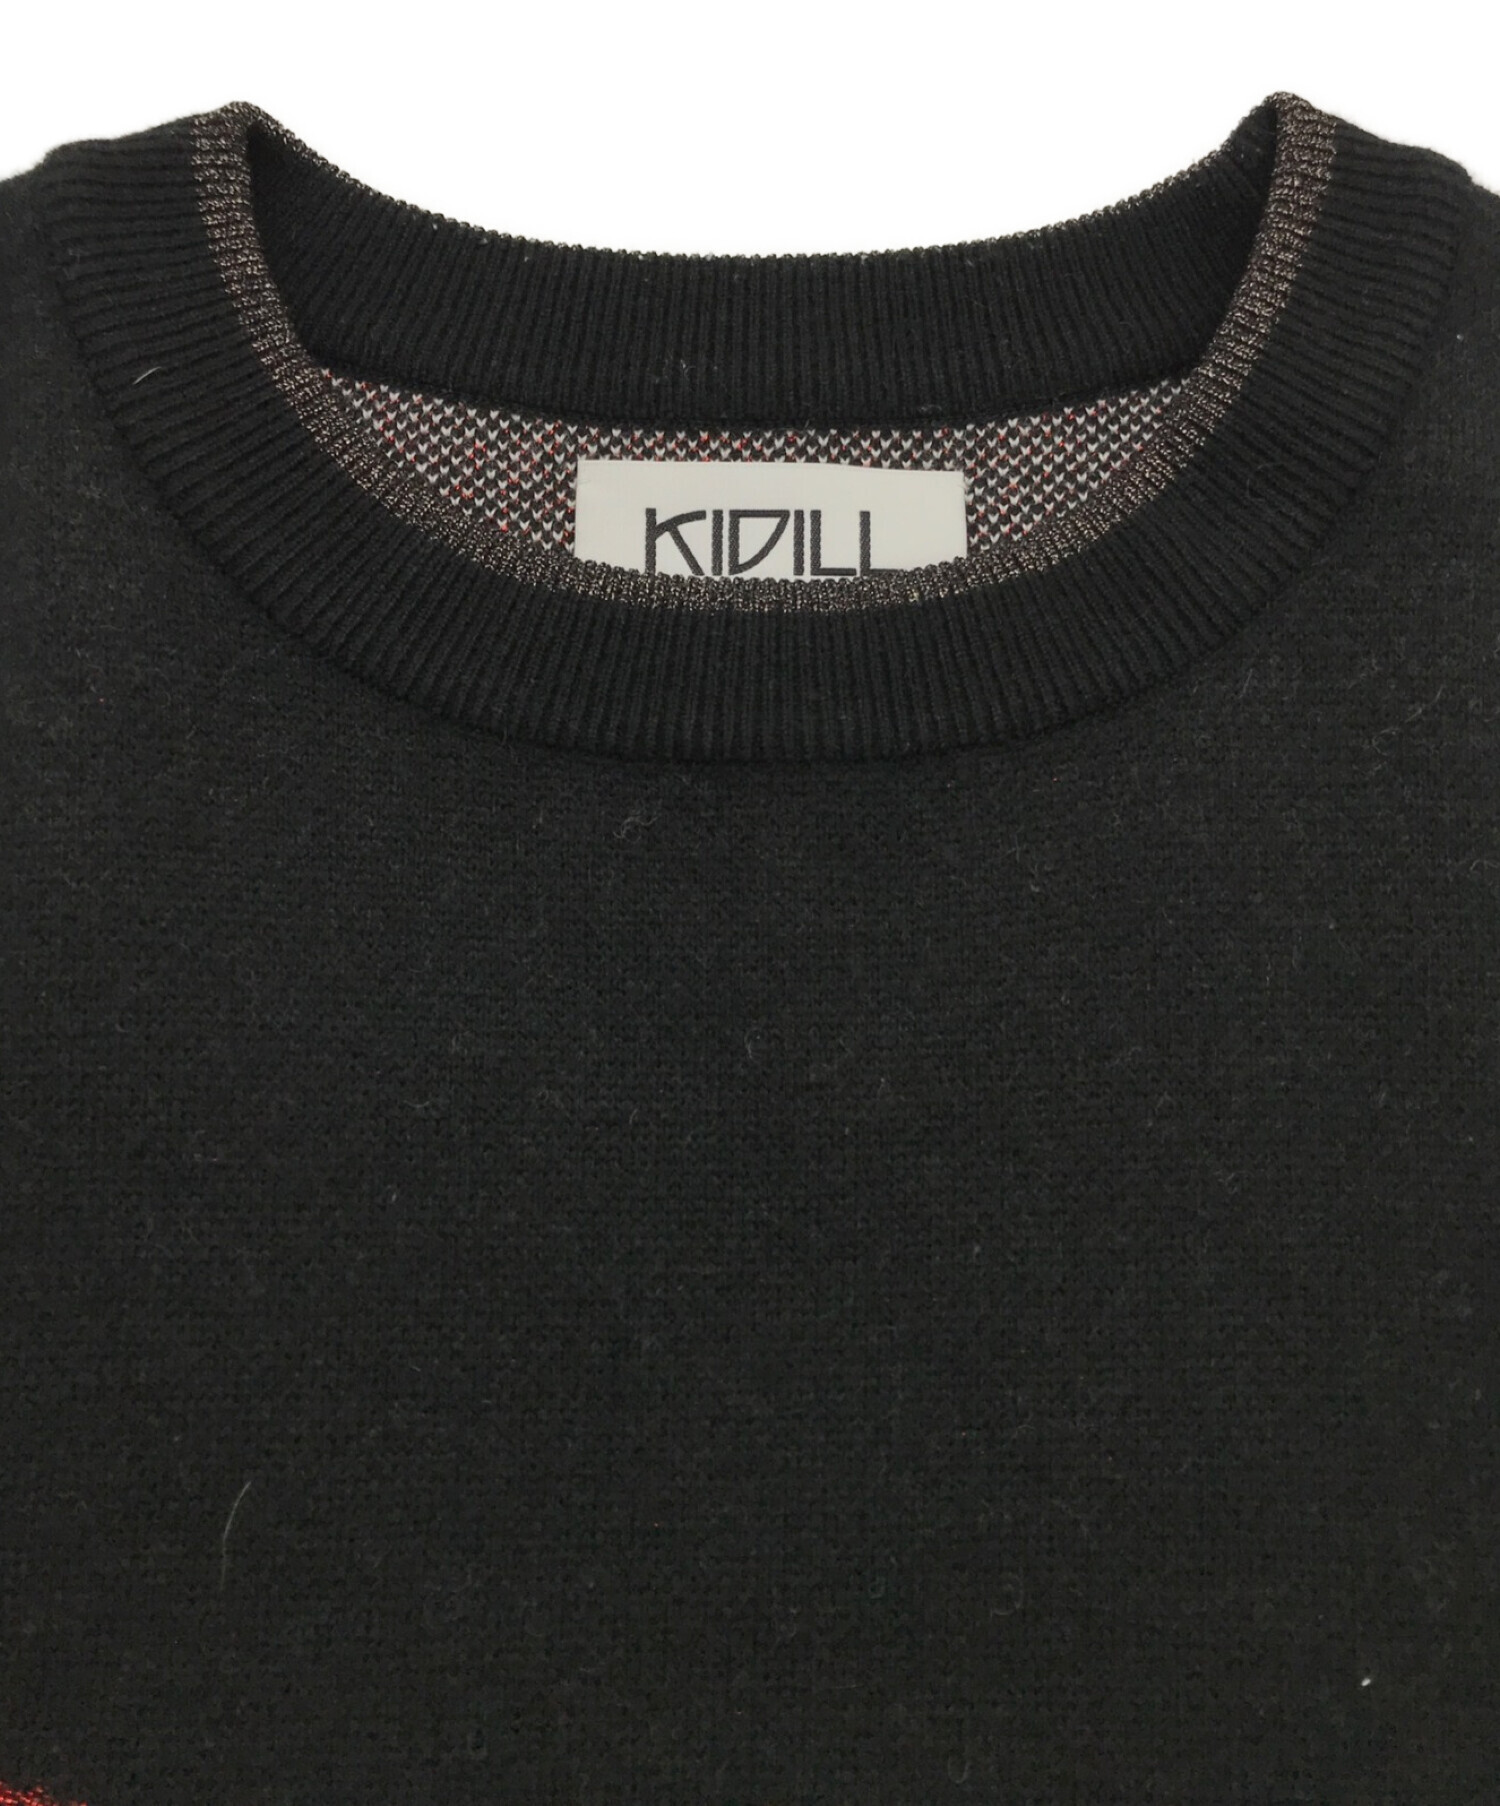 KIDILL×rurumu (キディル×ルルムウ) Drivers Knit/コラボニット ブラック サイズ:FREE